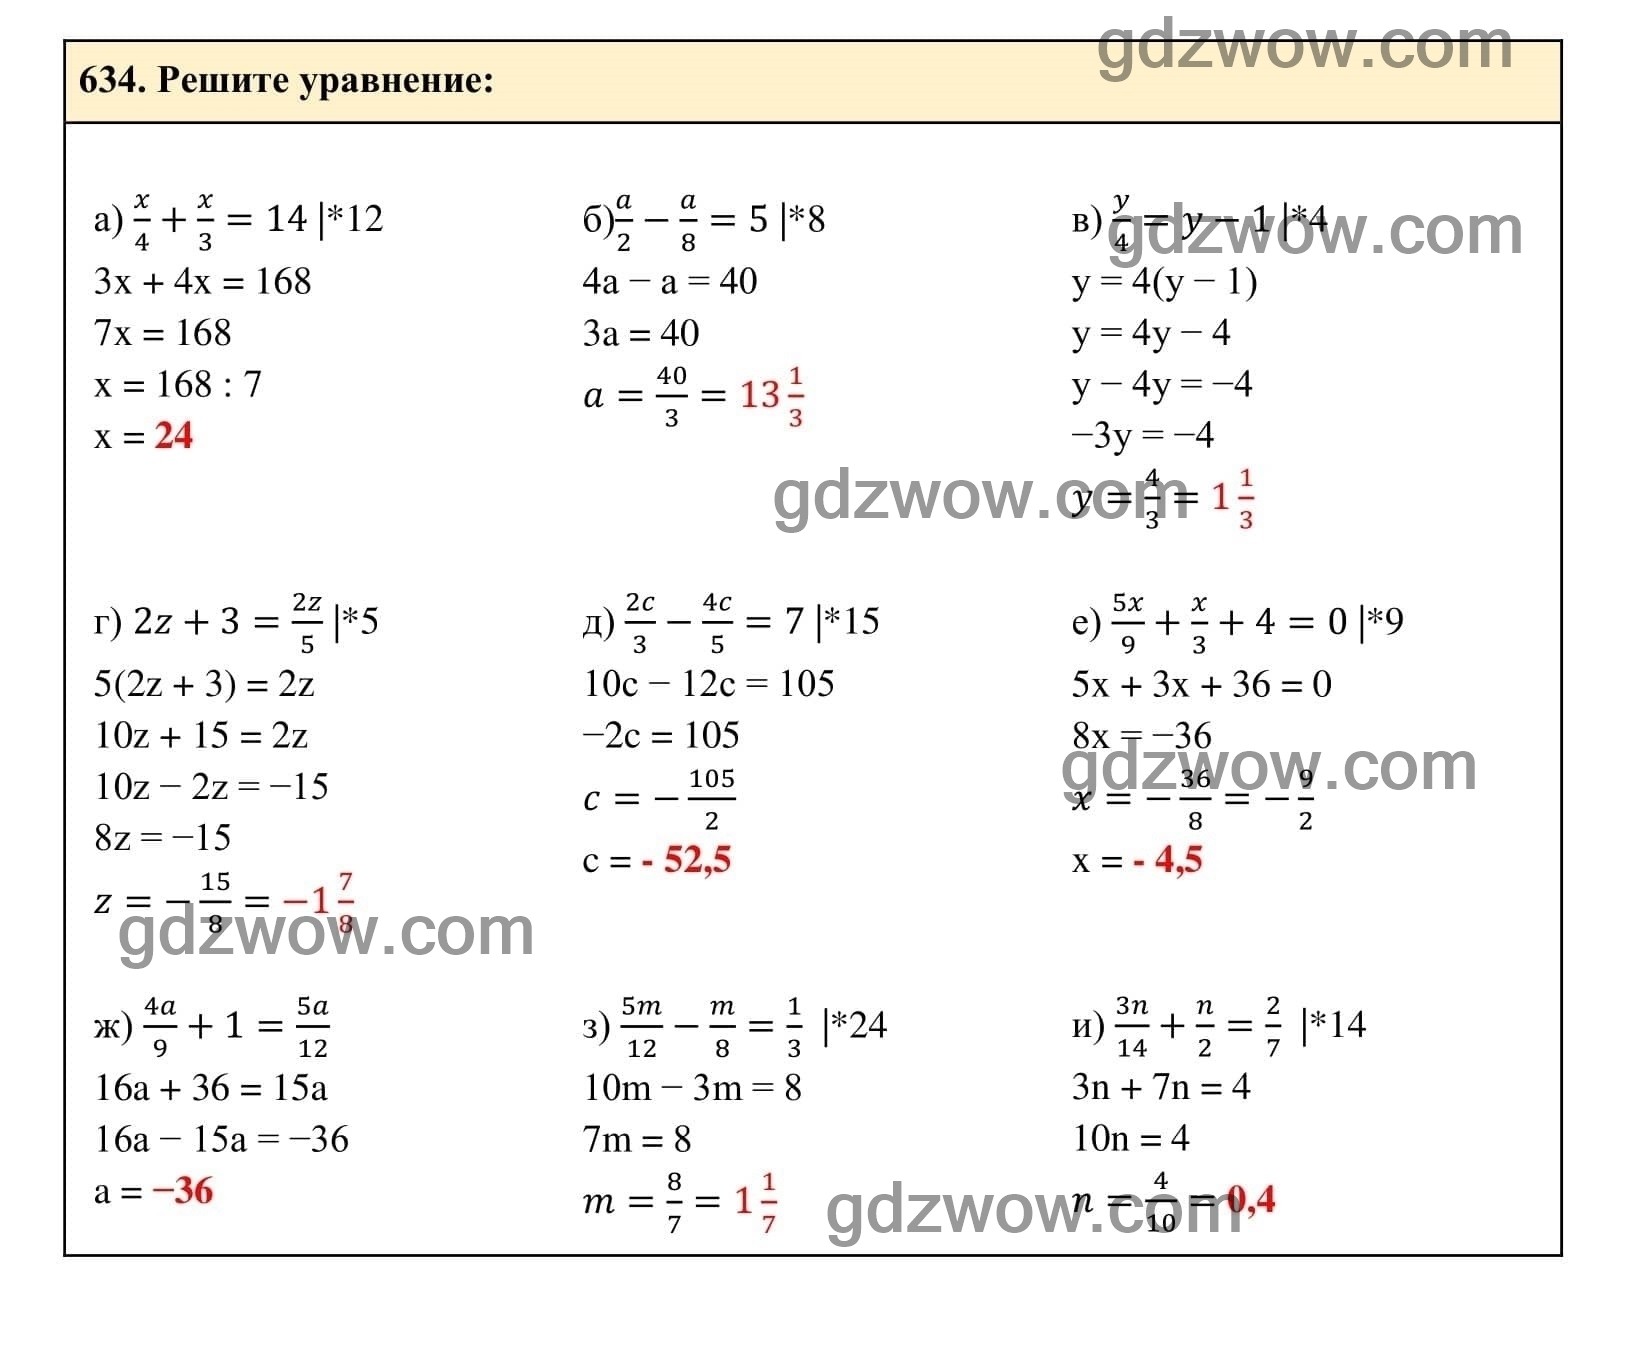 Упражнение 634 - ГДЗ по Алгебре 7 класс Учебник Макарычев (решебник) - GDZwow